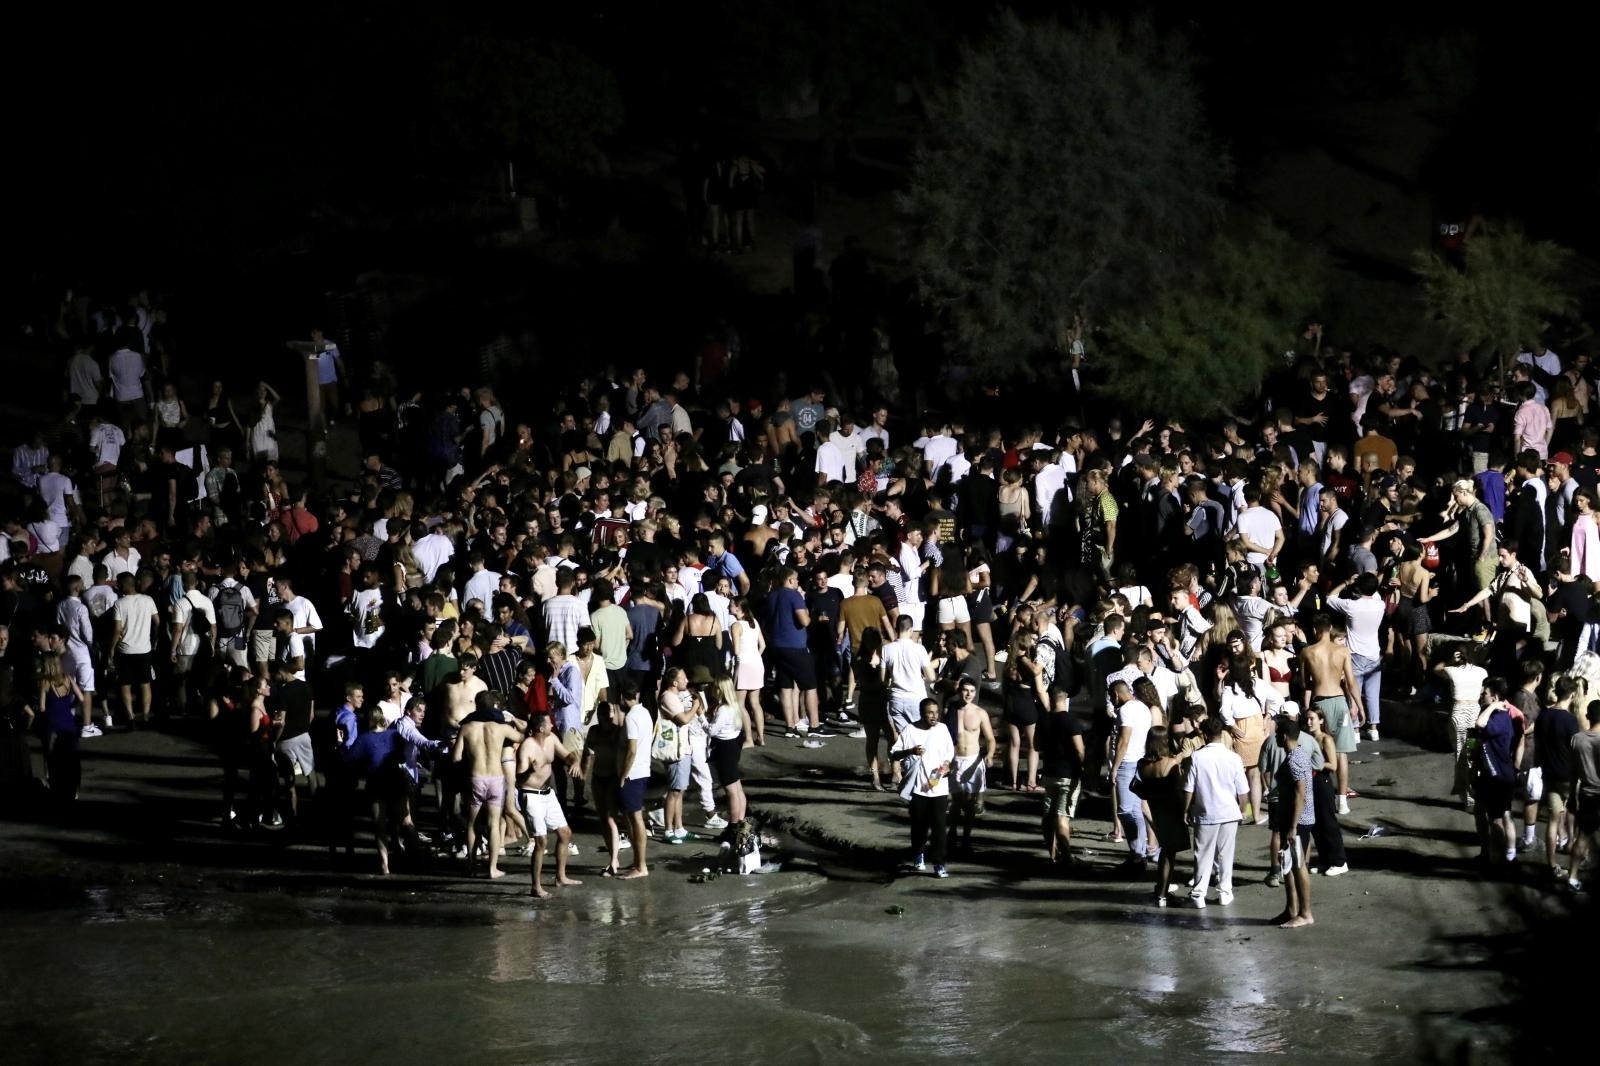 31.07.2021., Split - Kupaliste Bacvice nakon zatvaranja ugostiteljskih objekata postalo okupljaliste mladih. 
Photo: Ivo Cagalj/PIXSELL